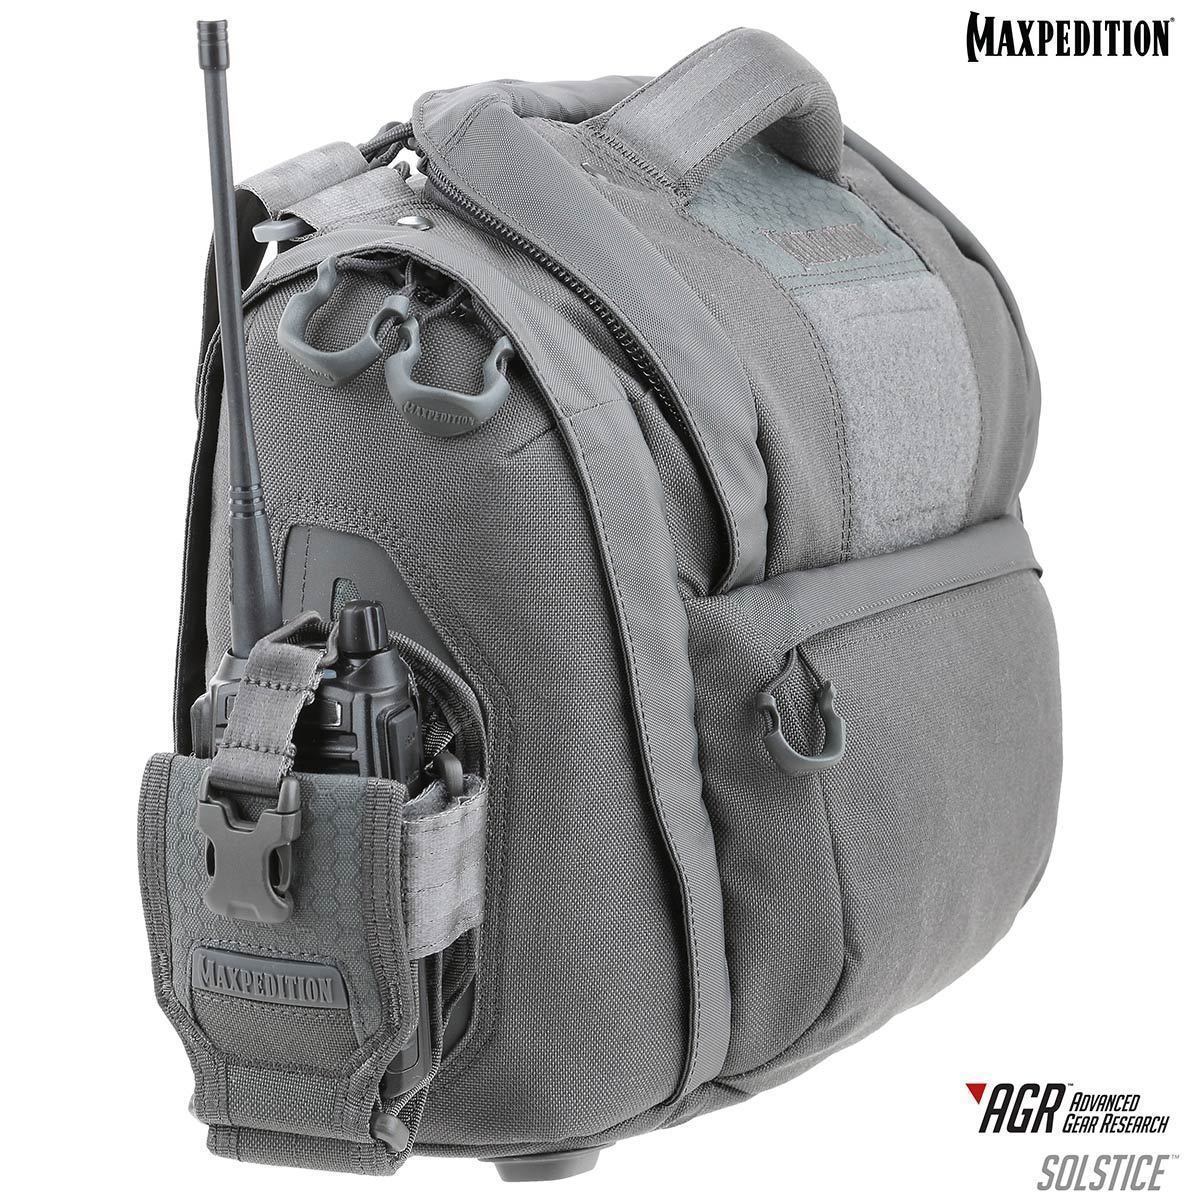 Solstice™ CCW Camera Bag | Maxpedition Tactical Gear